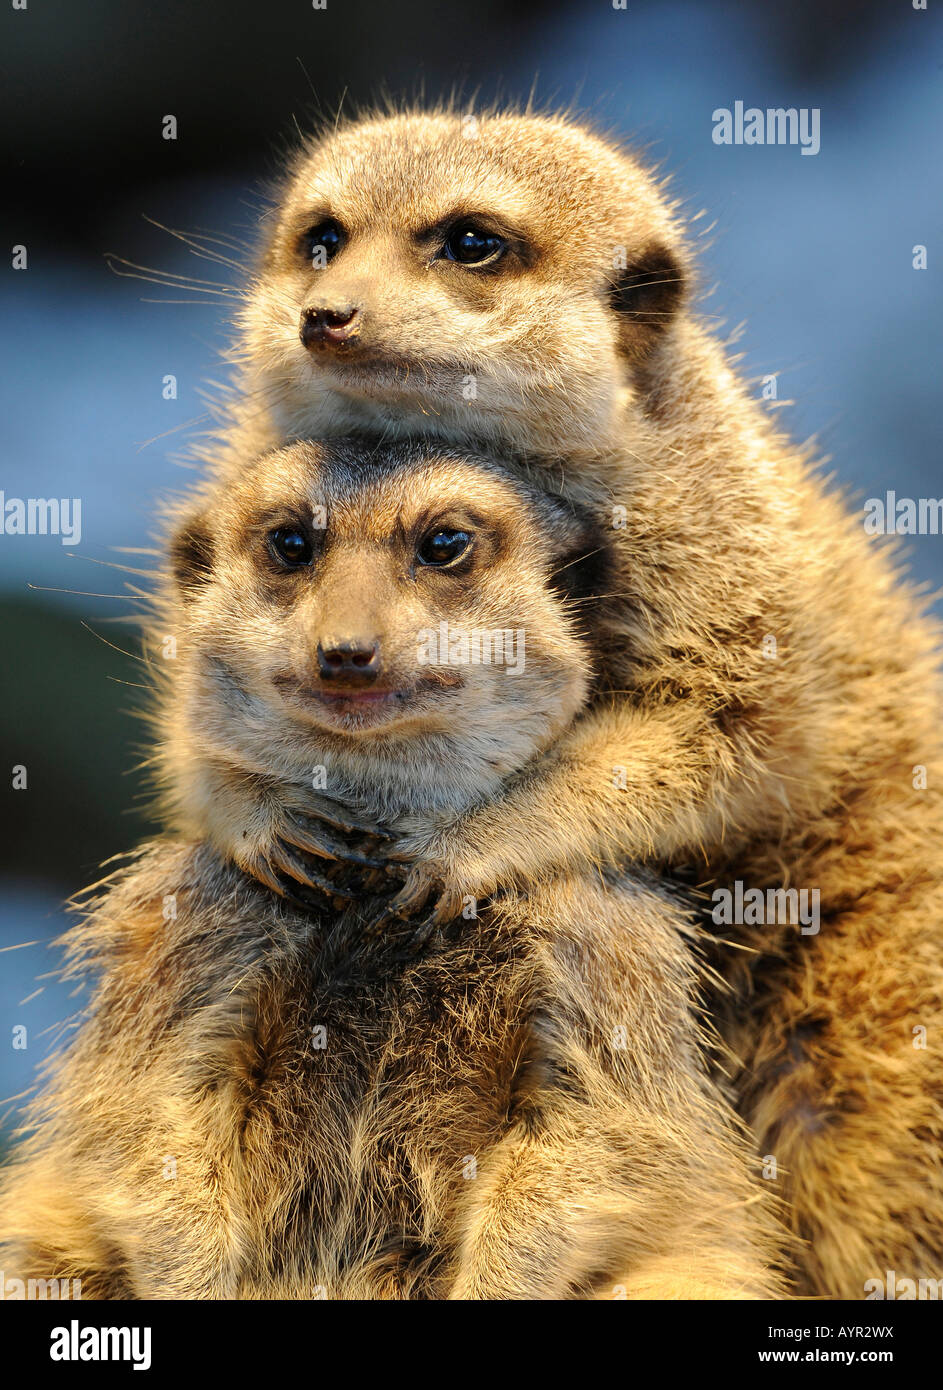 Meerkats or Suricates (Suricata suricatta) Stock Photo